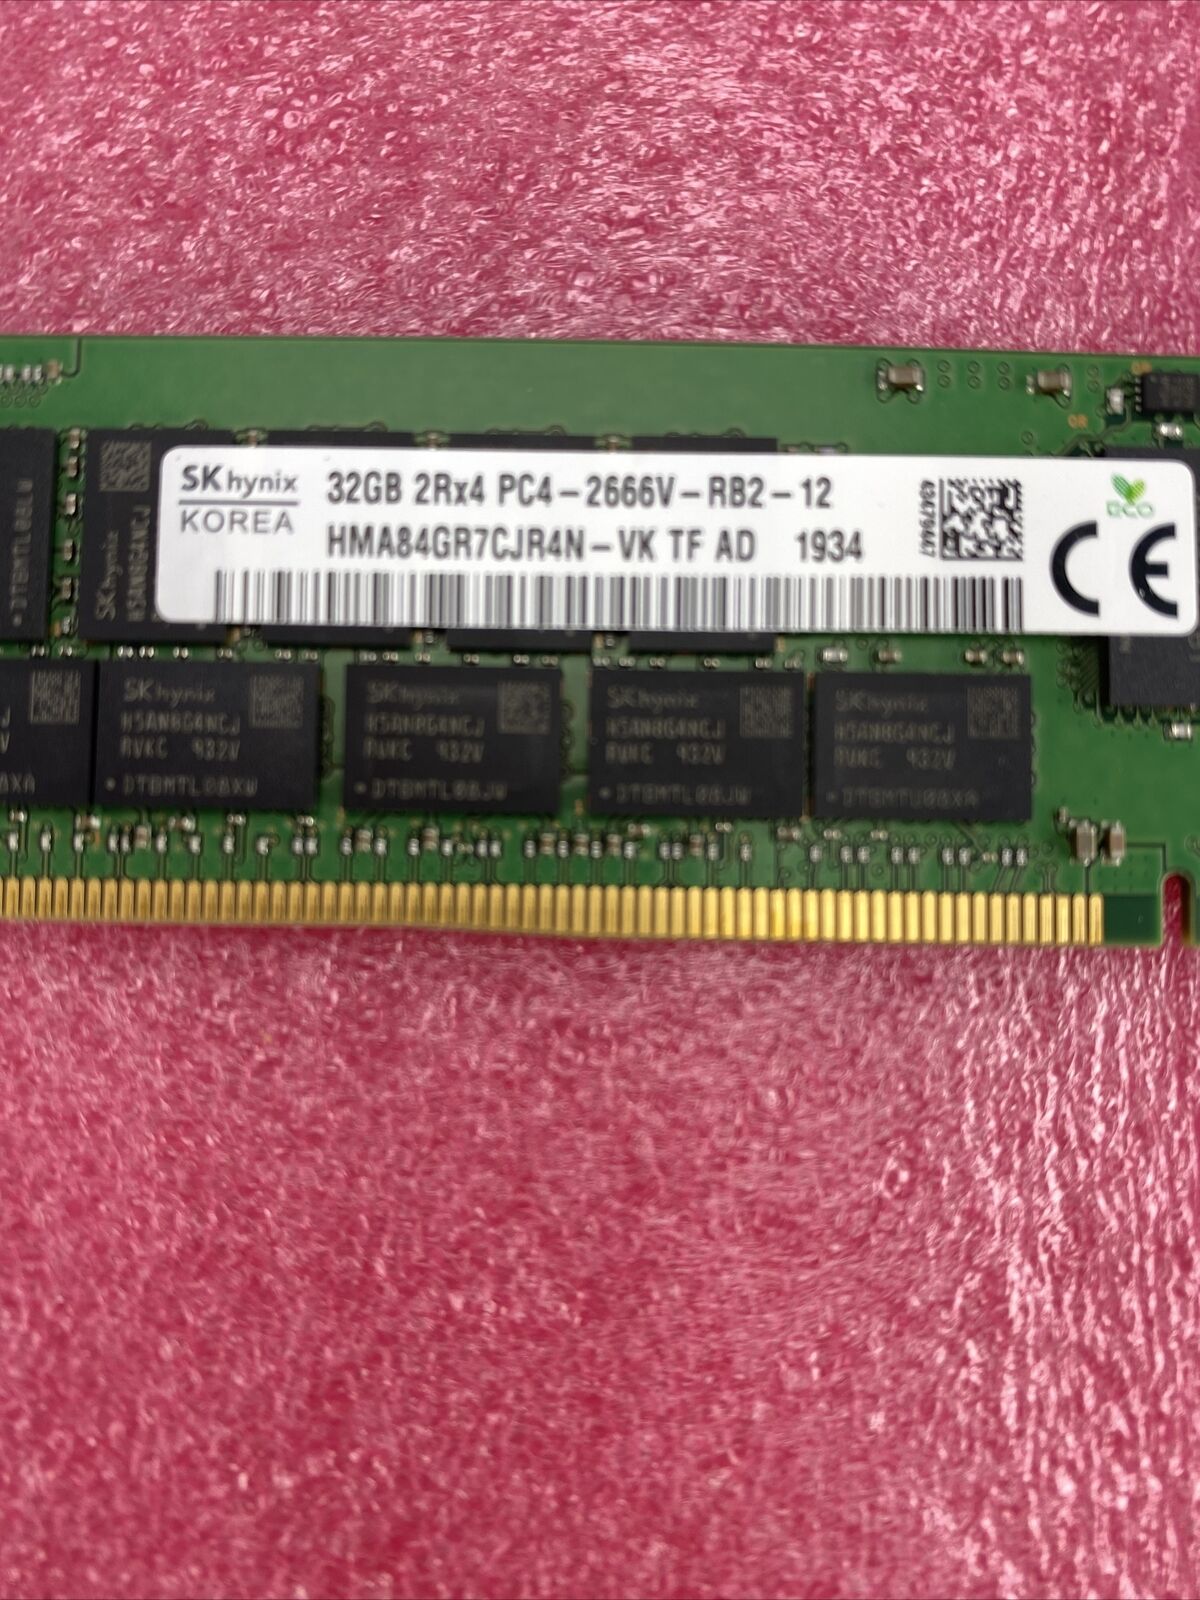 SK Hynix 32GB 2RX4 PC4-2666V DDR4 21300Mhz 288PIN ECC Server Memory DIMM RAM